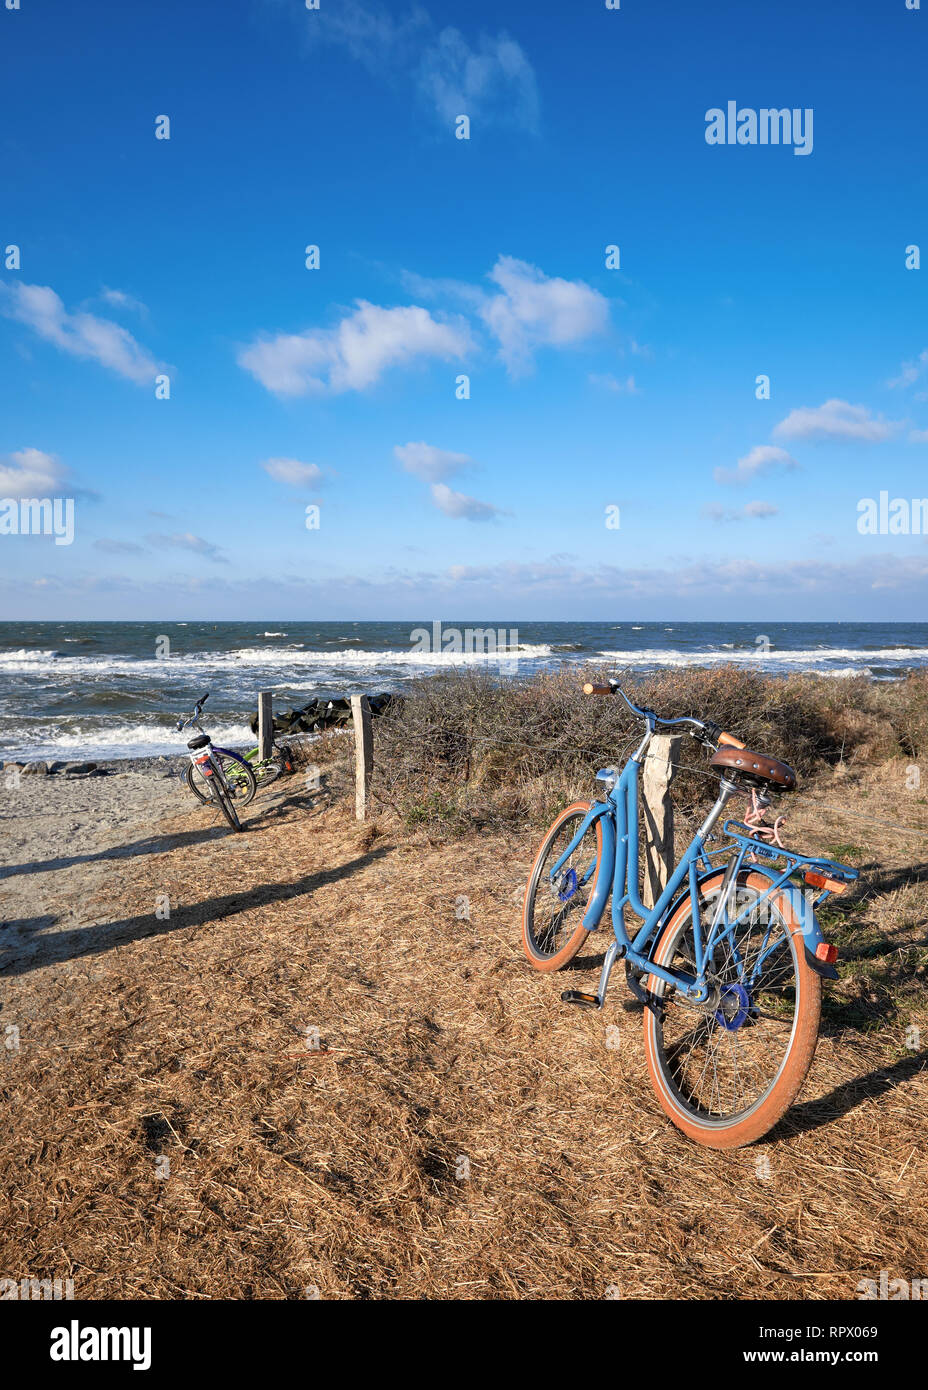 Prêt de vélos par l'entrée de la plage sur l'île de Hiddensee, mer Baltique, du nord de l'Allemagne. Jour lumineux avec ciel bleu en automne ou en hiver. Banque D'Images